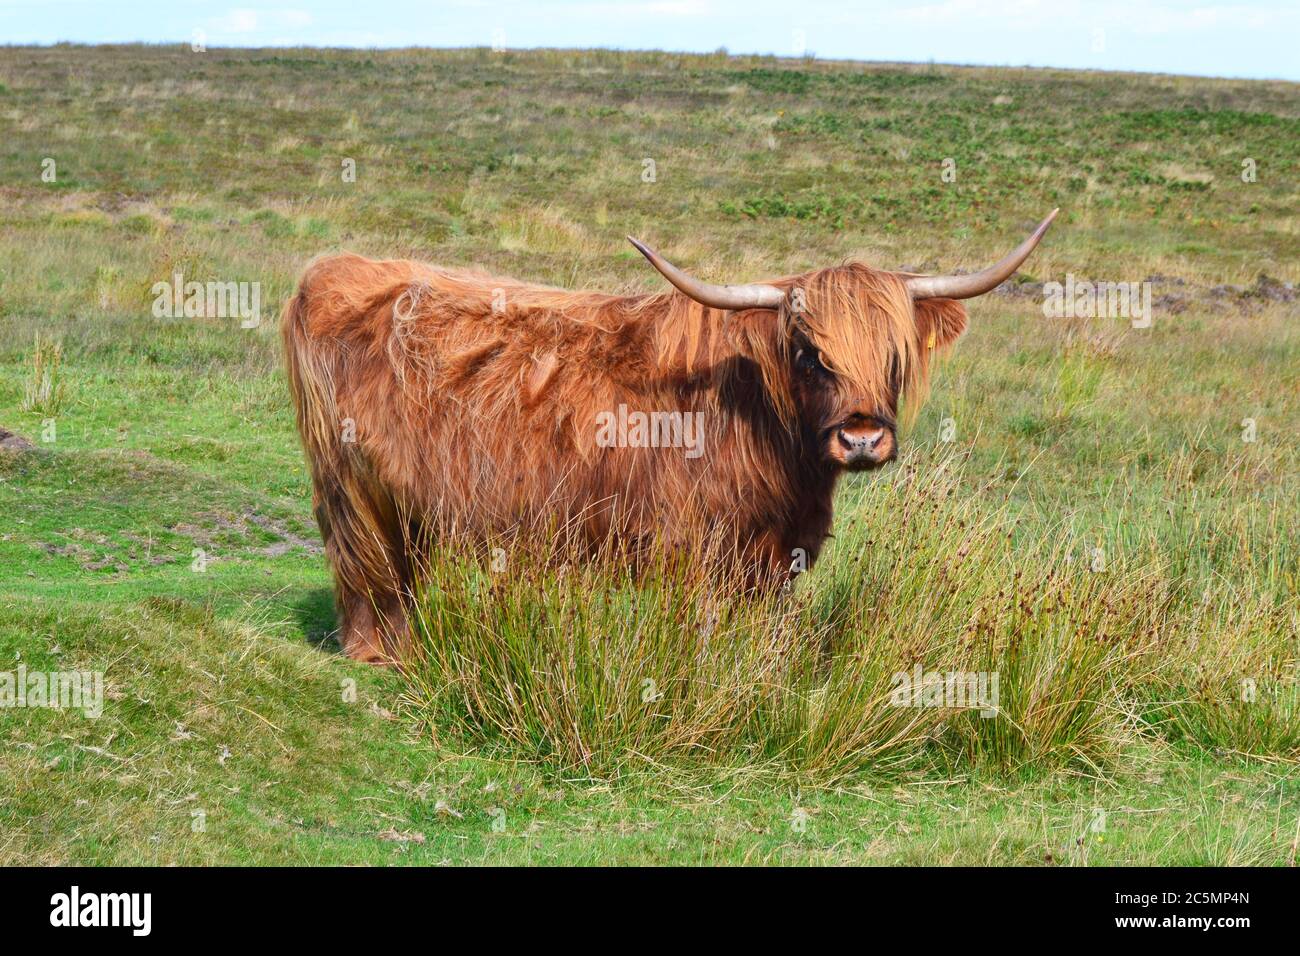 Bestiame delle Highland sui paesaggi selvaggi di Exmoor Devon, Regno Unito Foto Stock